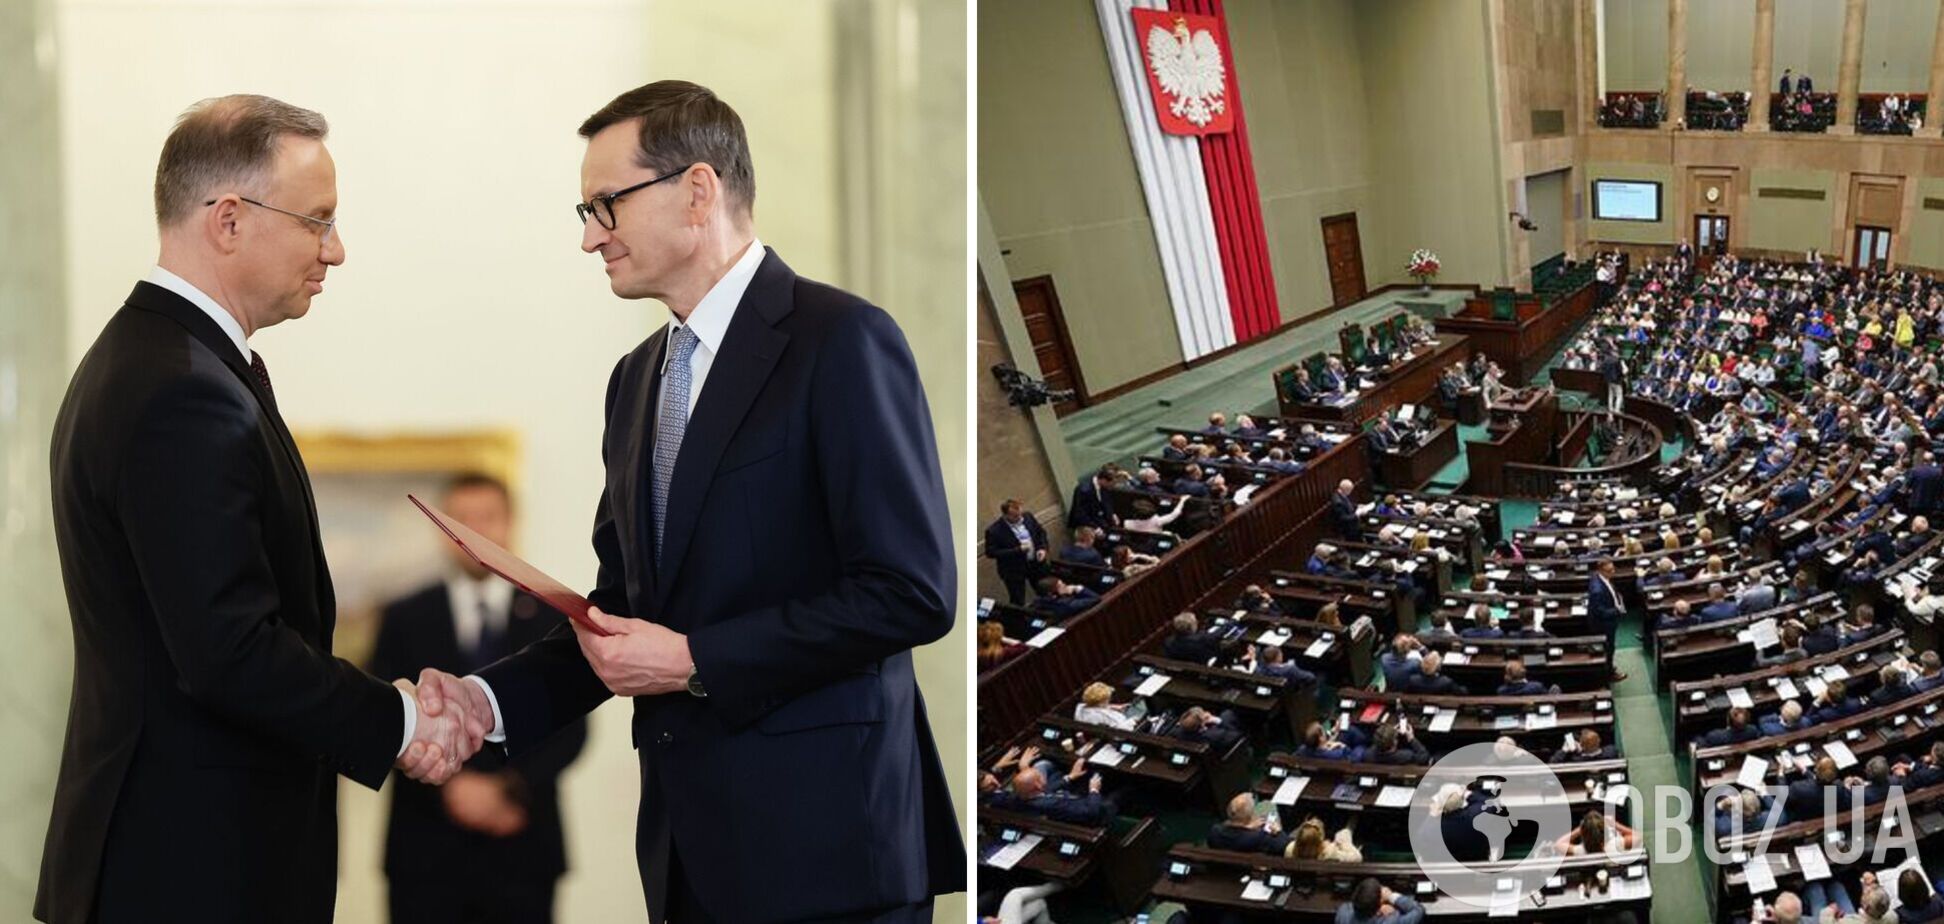 Дуда назначил Моравецкого премьер-министром Польши и поручил сформировать новое правительство: что происходит